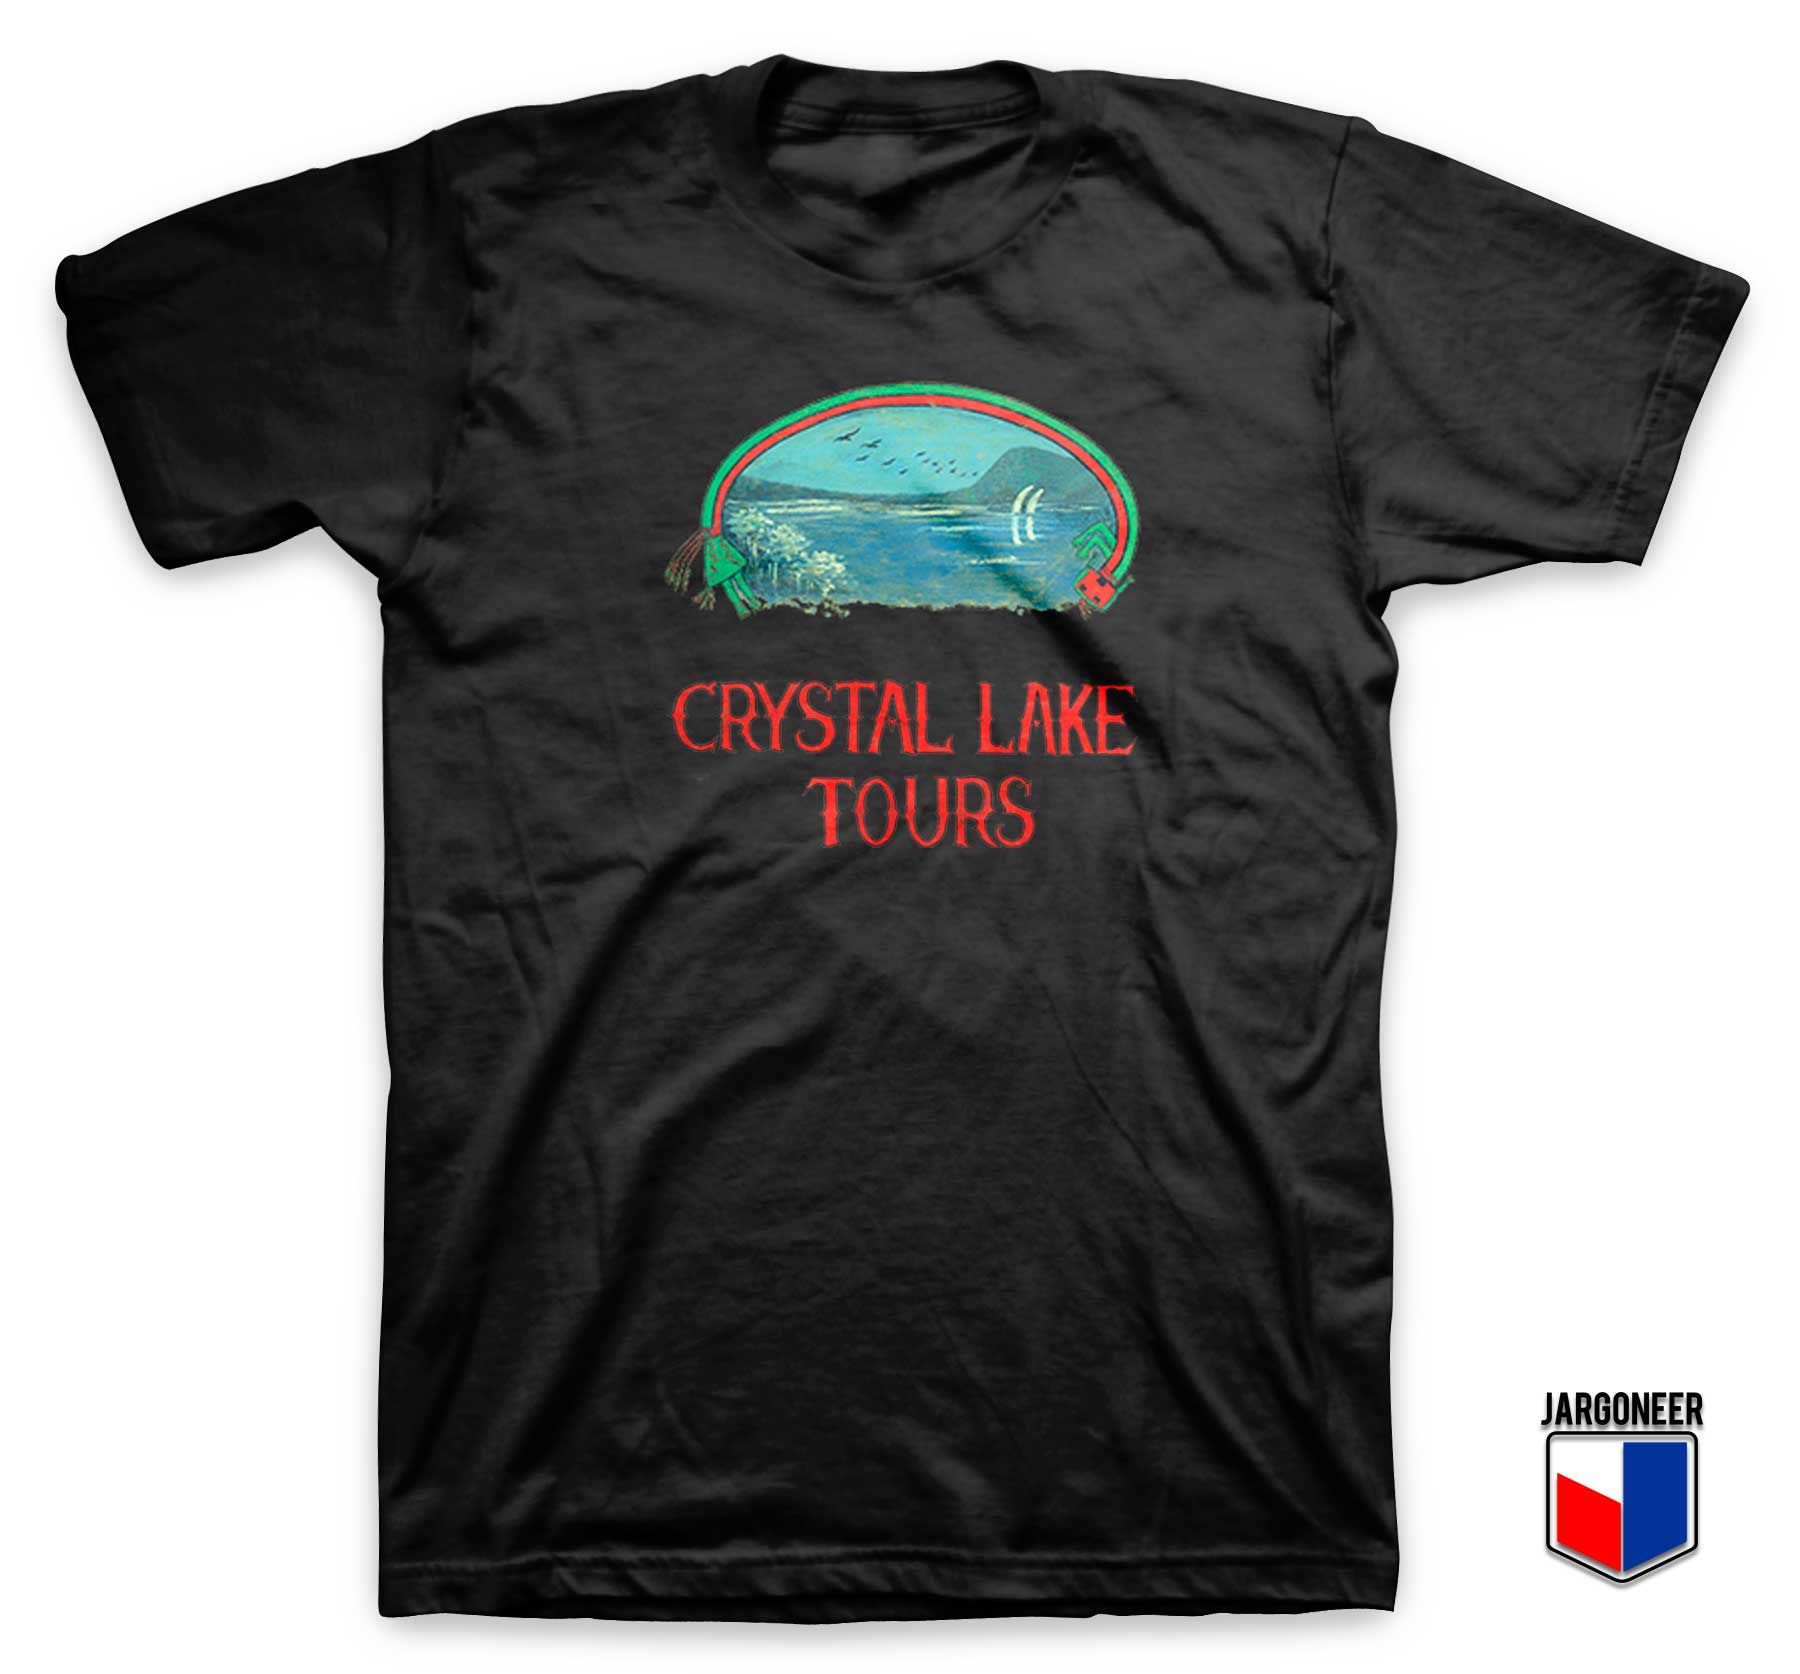 Crystal Lake Tours - Shop Unique Graphic Cool Shirt Designs